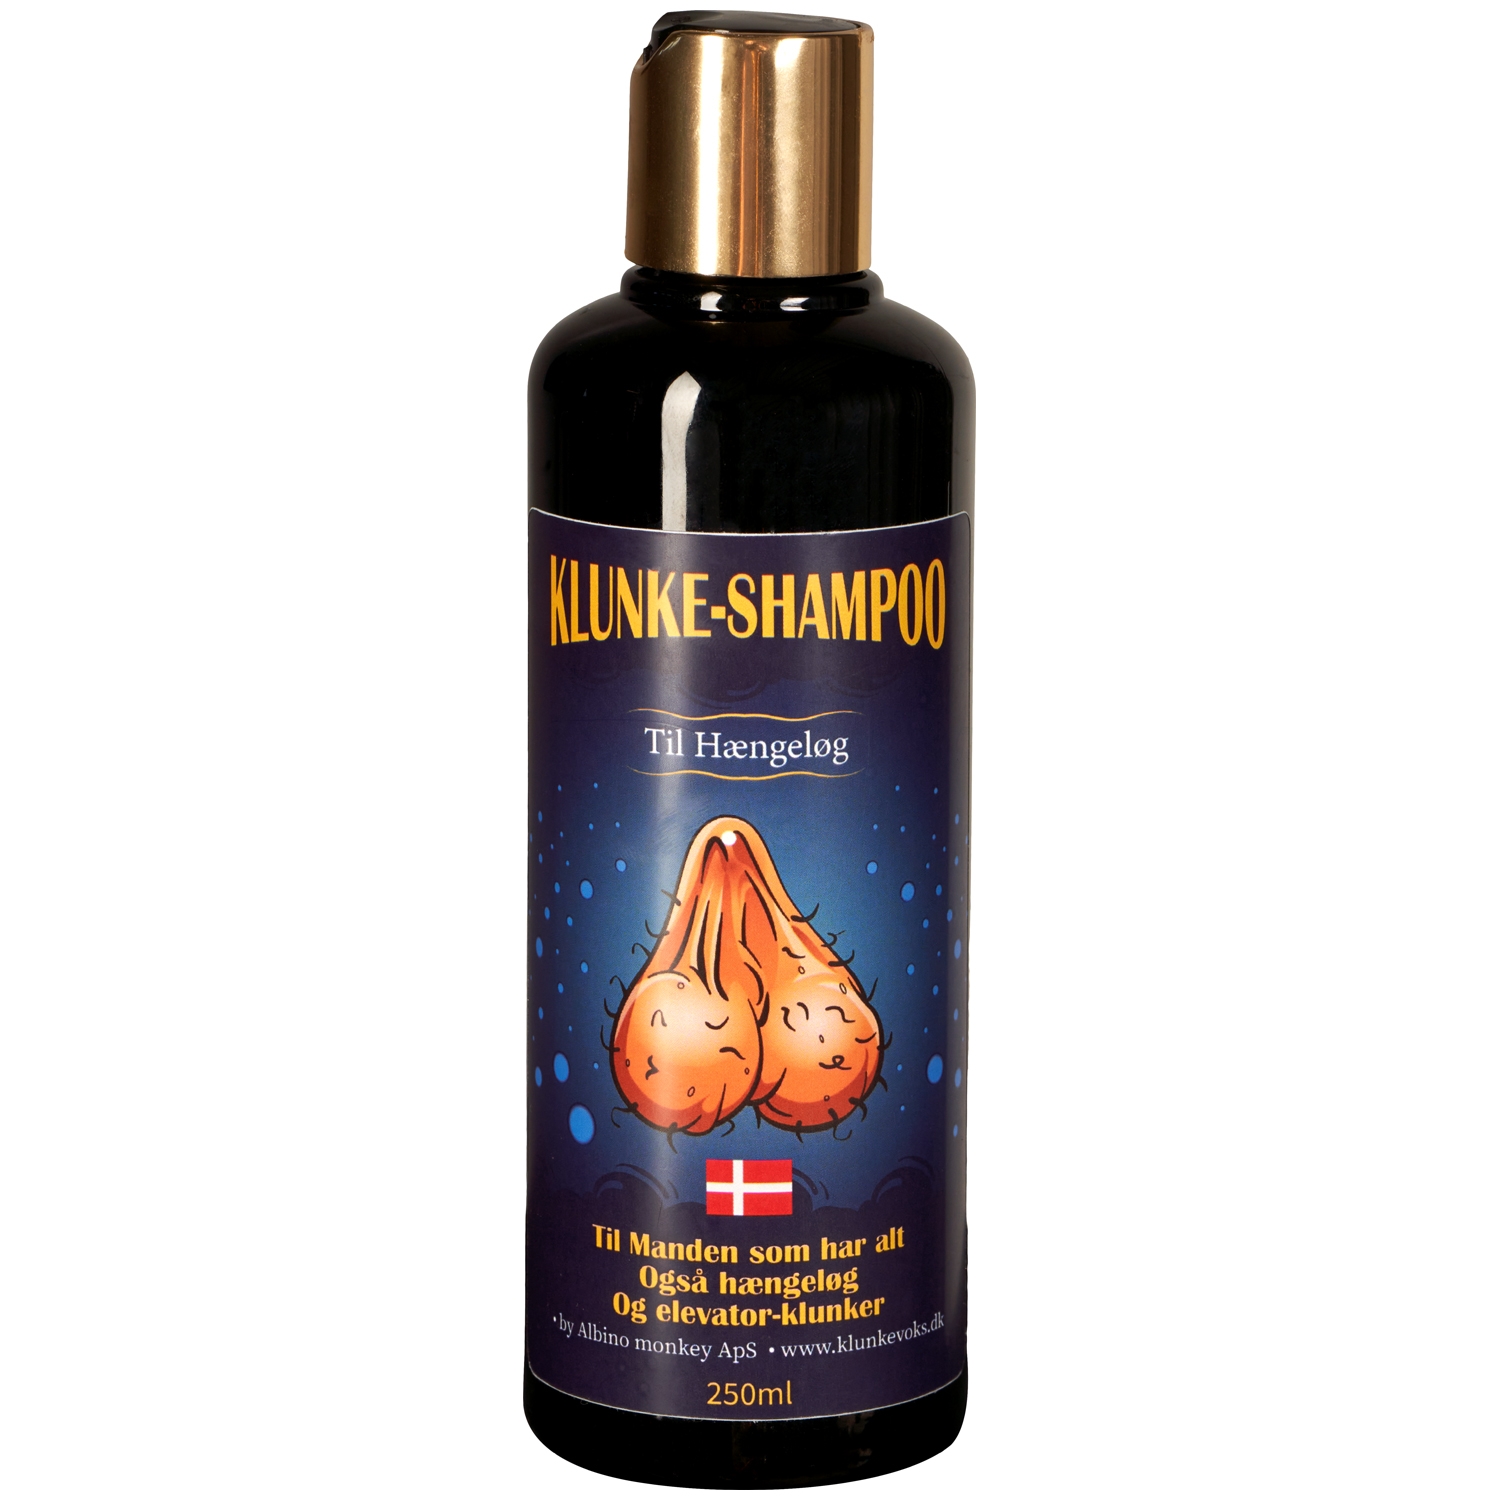 1: Klunke Shampoo Til Hængeløg Intimsæbe til Mænd 250 ml - Klar